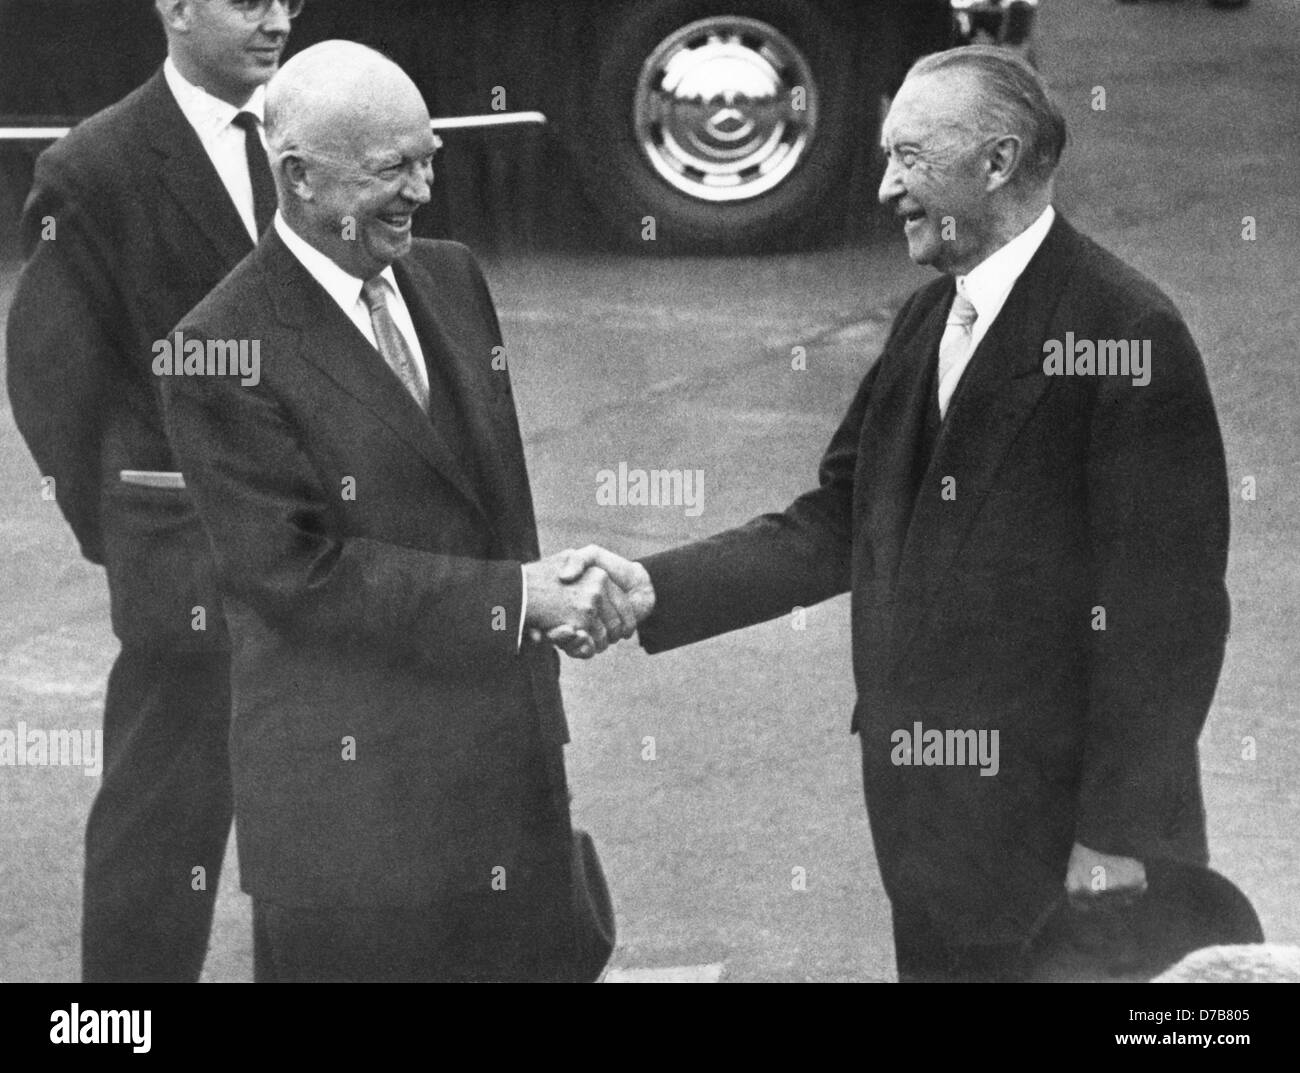 Le président américain Dwight D. Eisenhower (l) est accueilli par le chancelier allemand Konrad Adenauer après son arrivée à Bonn le 26 août en 1959. Eisenhower est arrivé pour une visite d'une journée à la République fédérale d'Allemagne. Banque D'Images